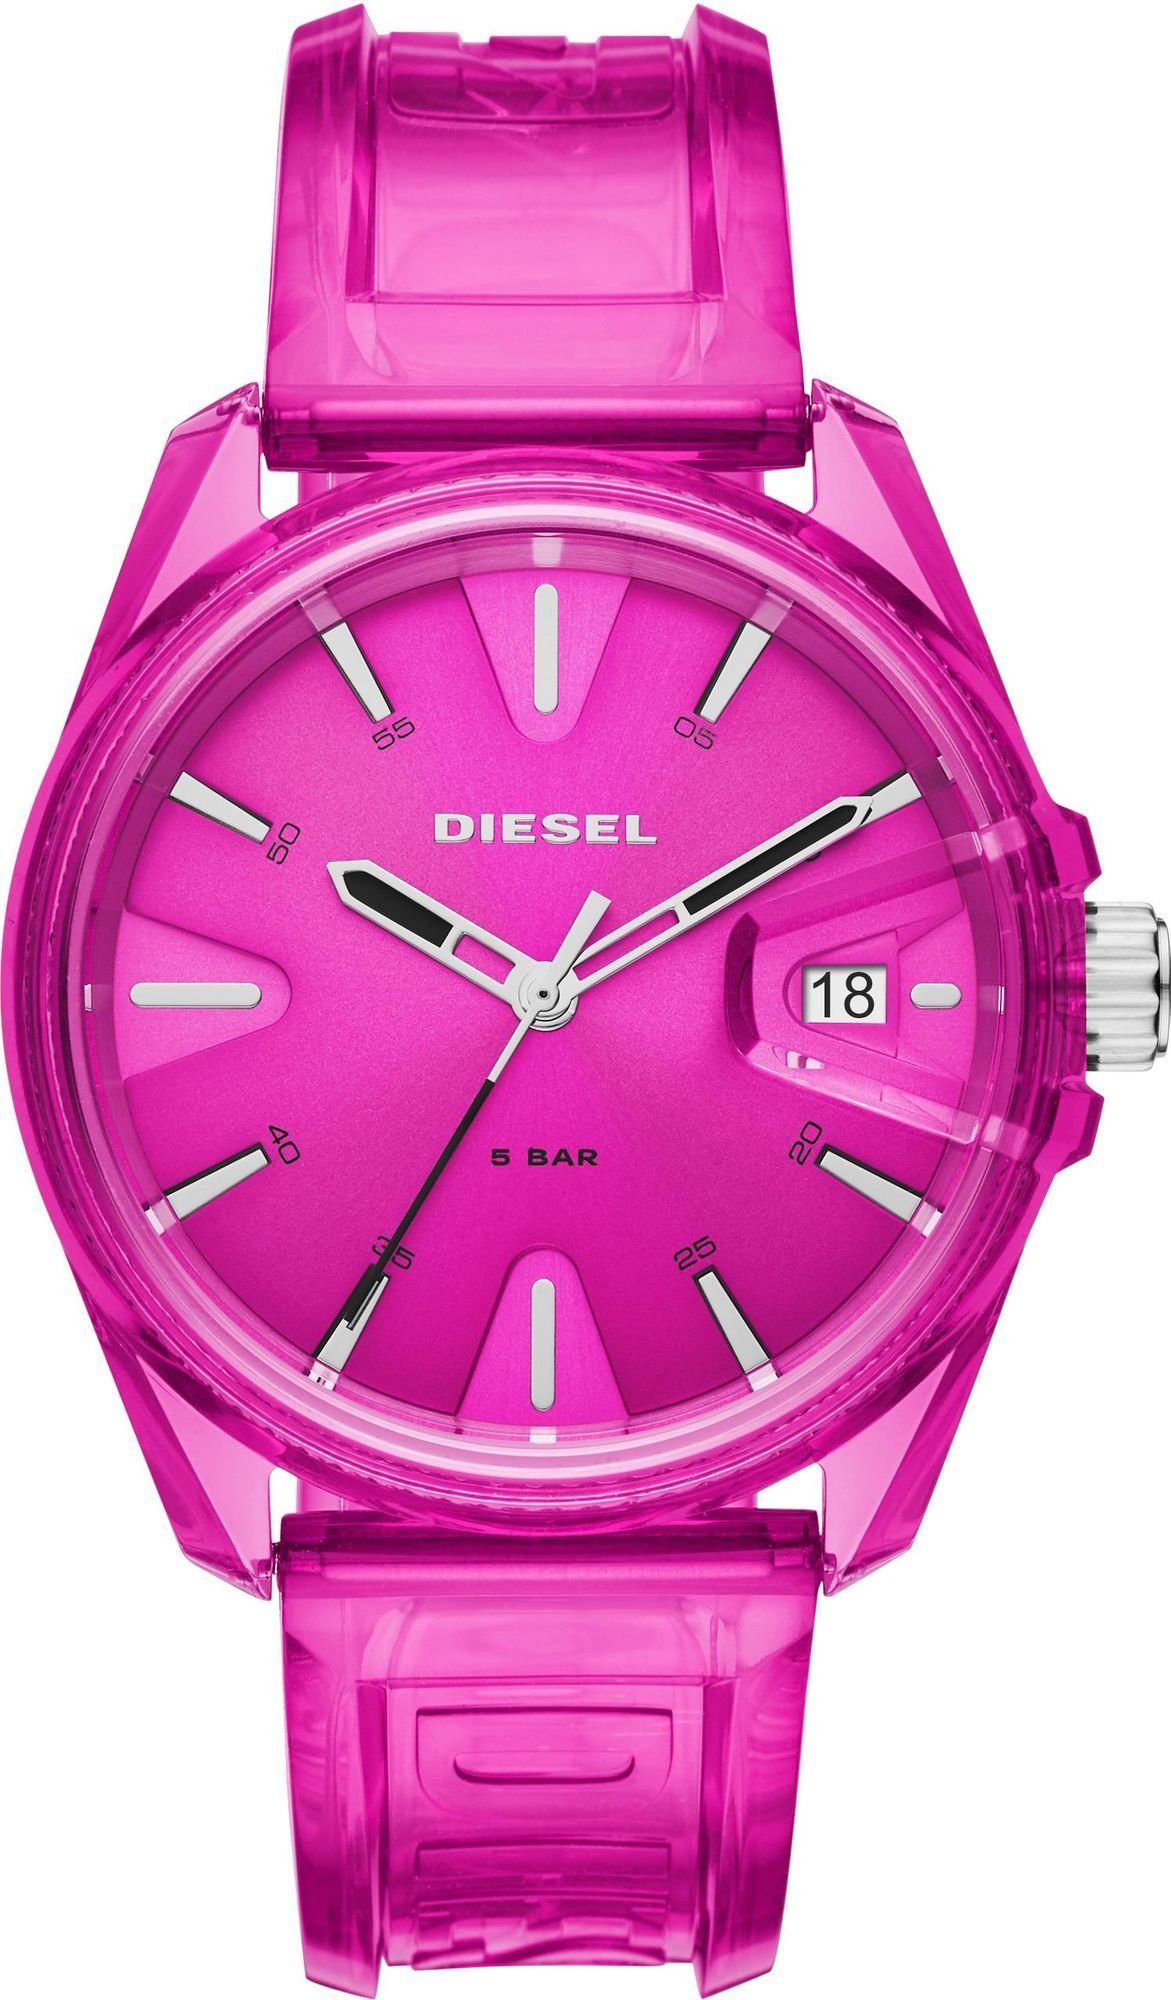 Diesel Mechanische Uhr DIESEL MS9 Armbanduhr DZ1929